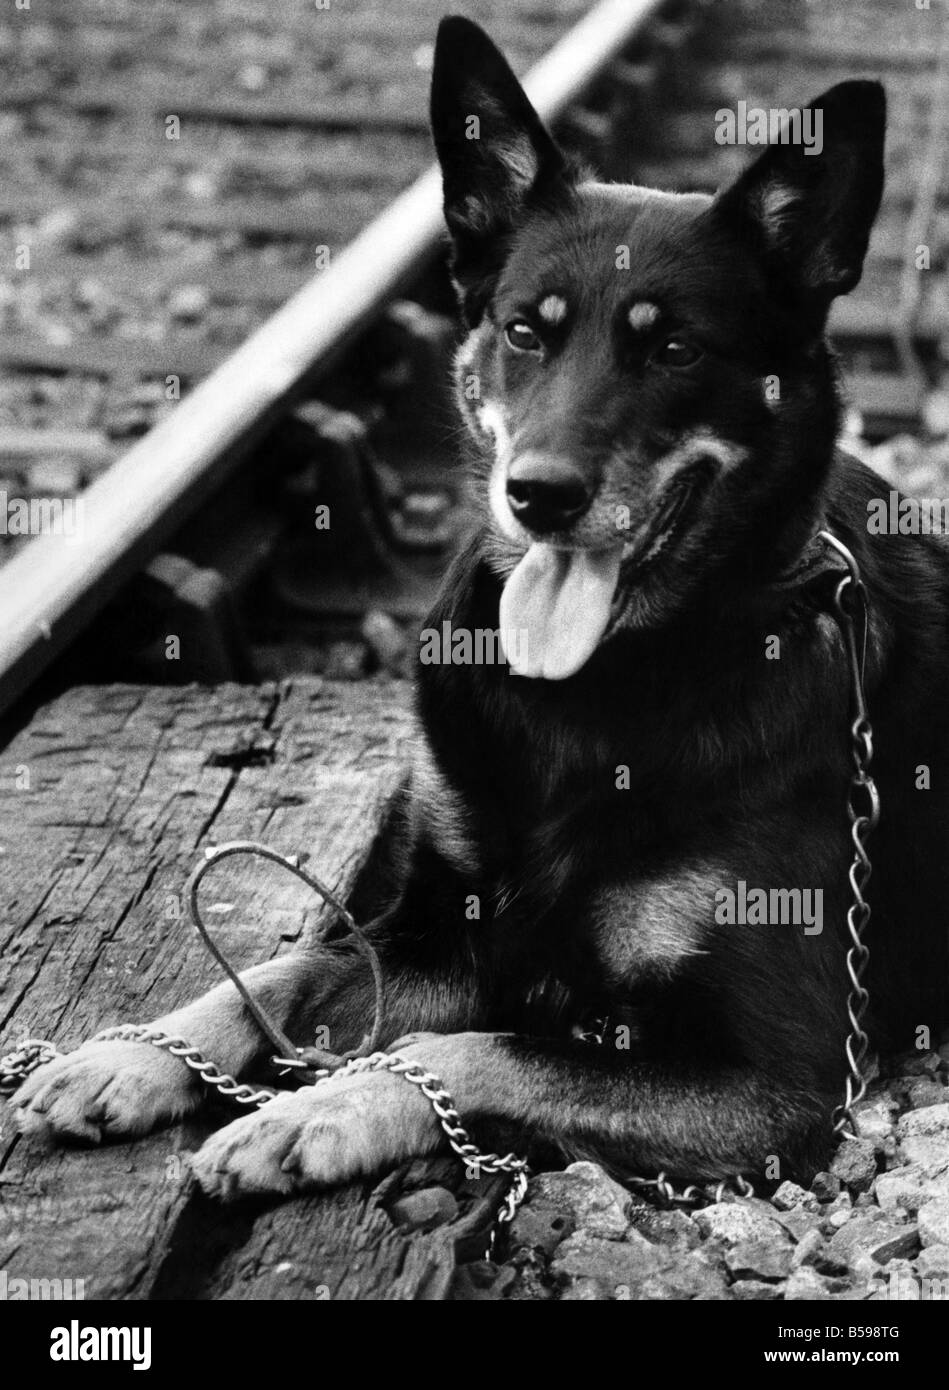 Chrissie neben der Schiene, wo ihr Welpe starb nach rutscht ihr Halsband, der Welpe leer Blei und Kragen, sind vor ihr. September 1972 P007434 Stockfoto